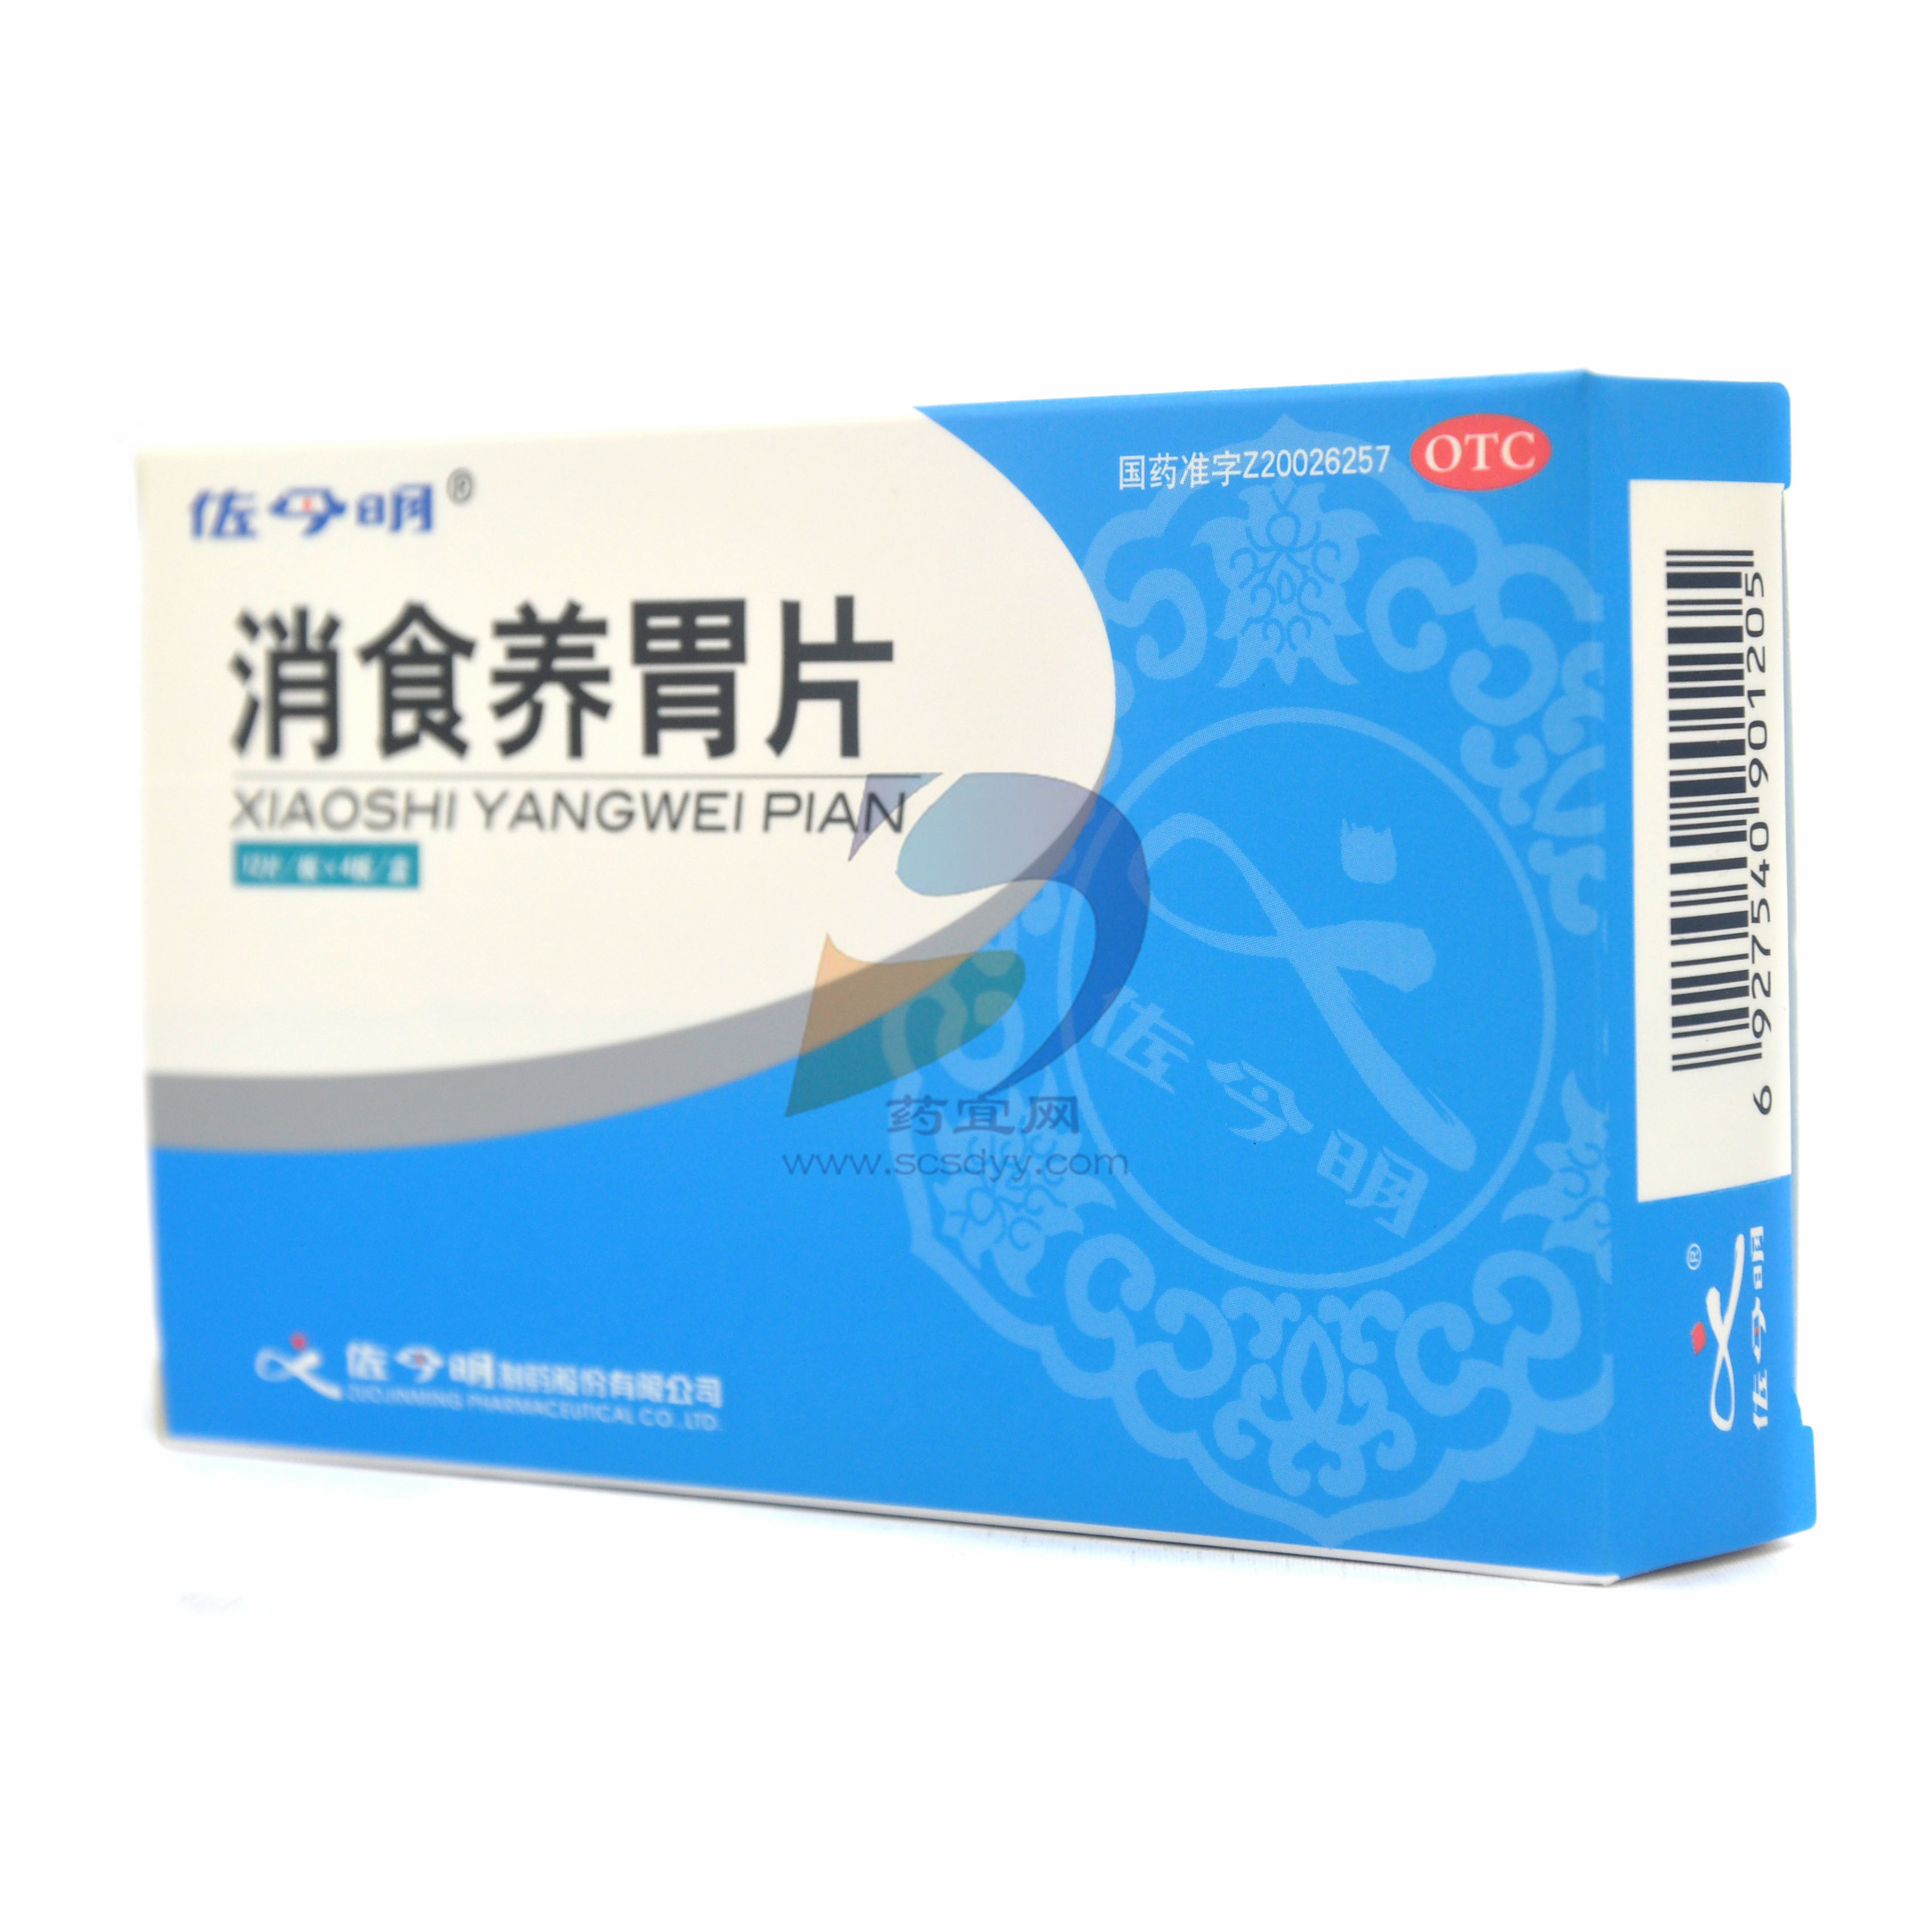 护肝茶（保护肝脏的茶）_摘编百科